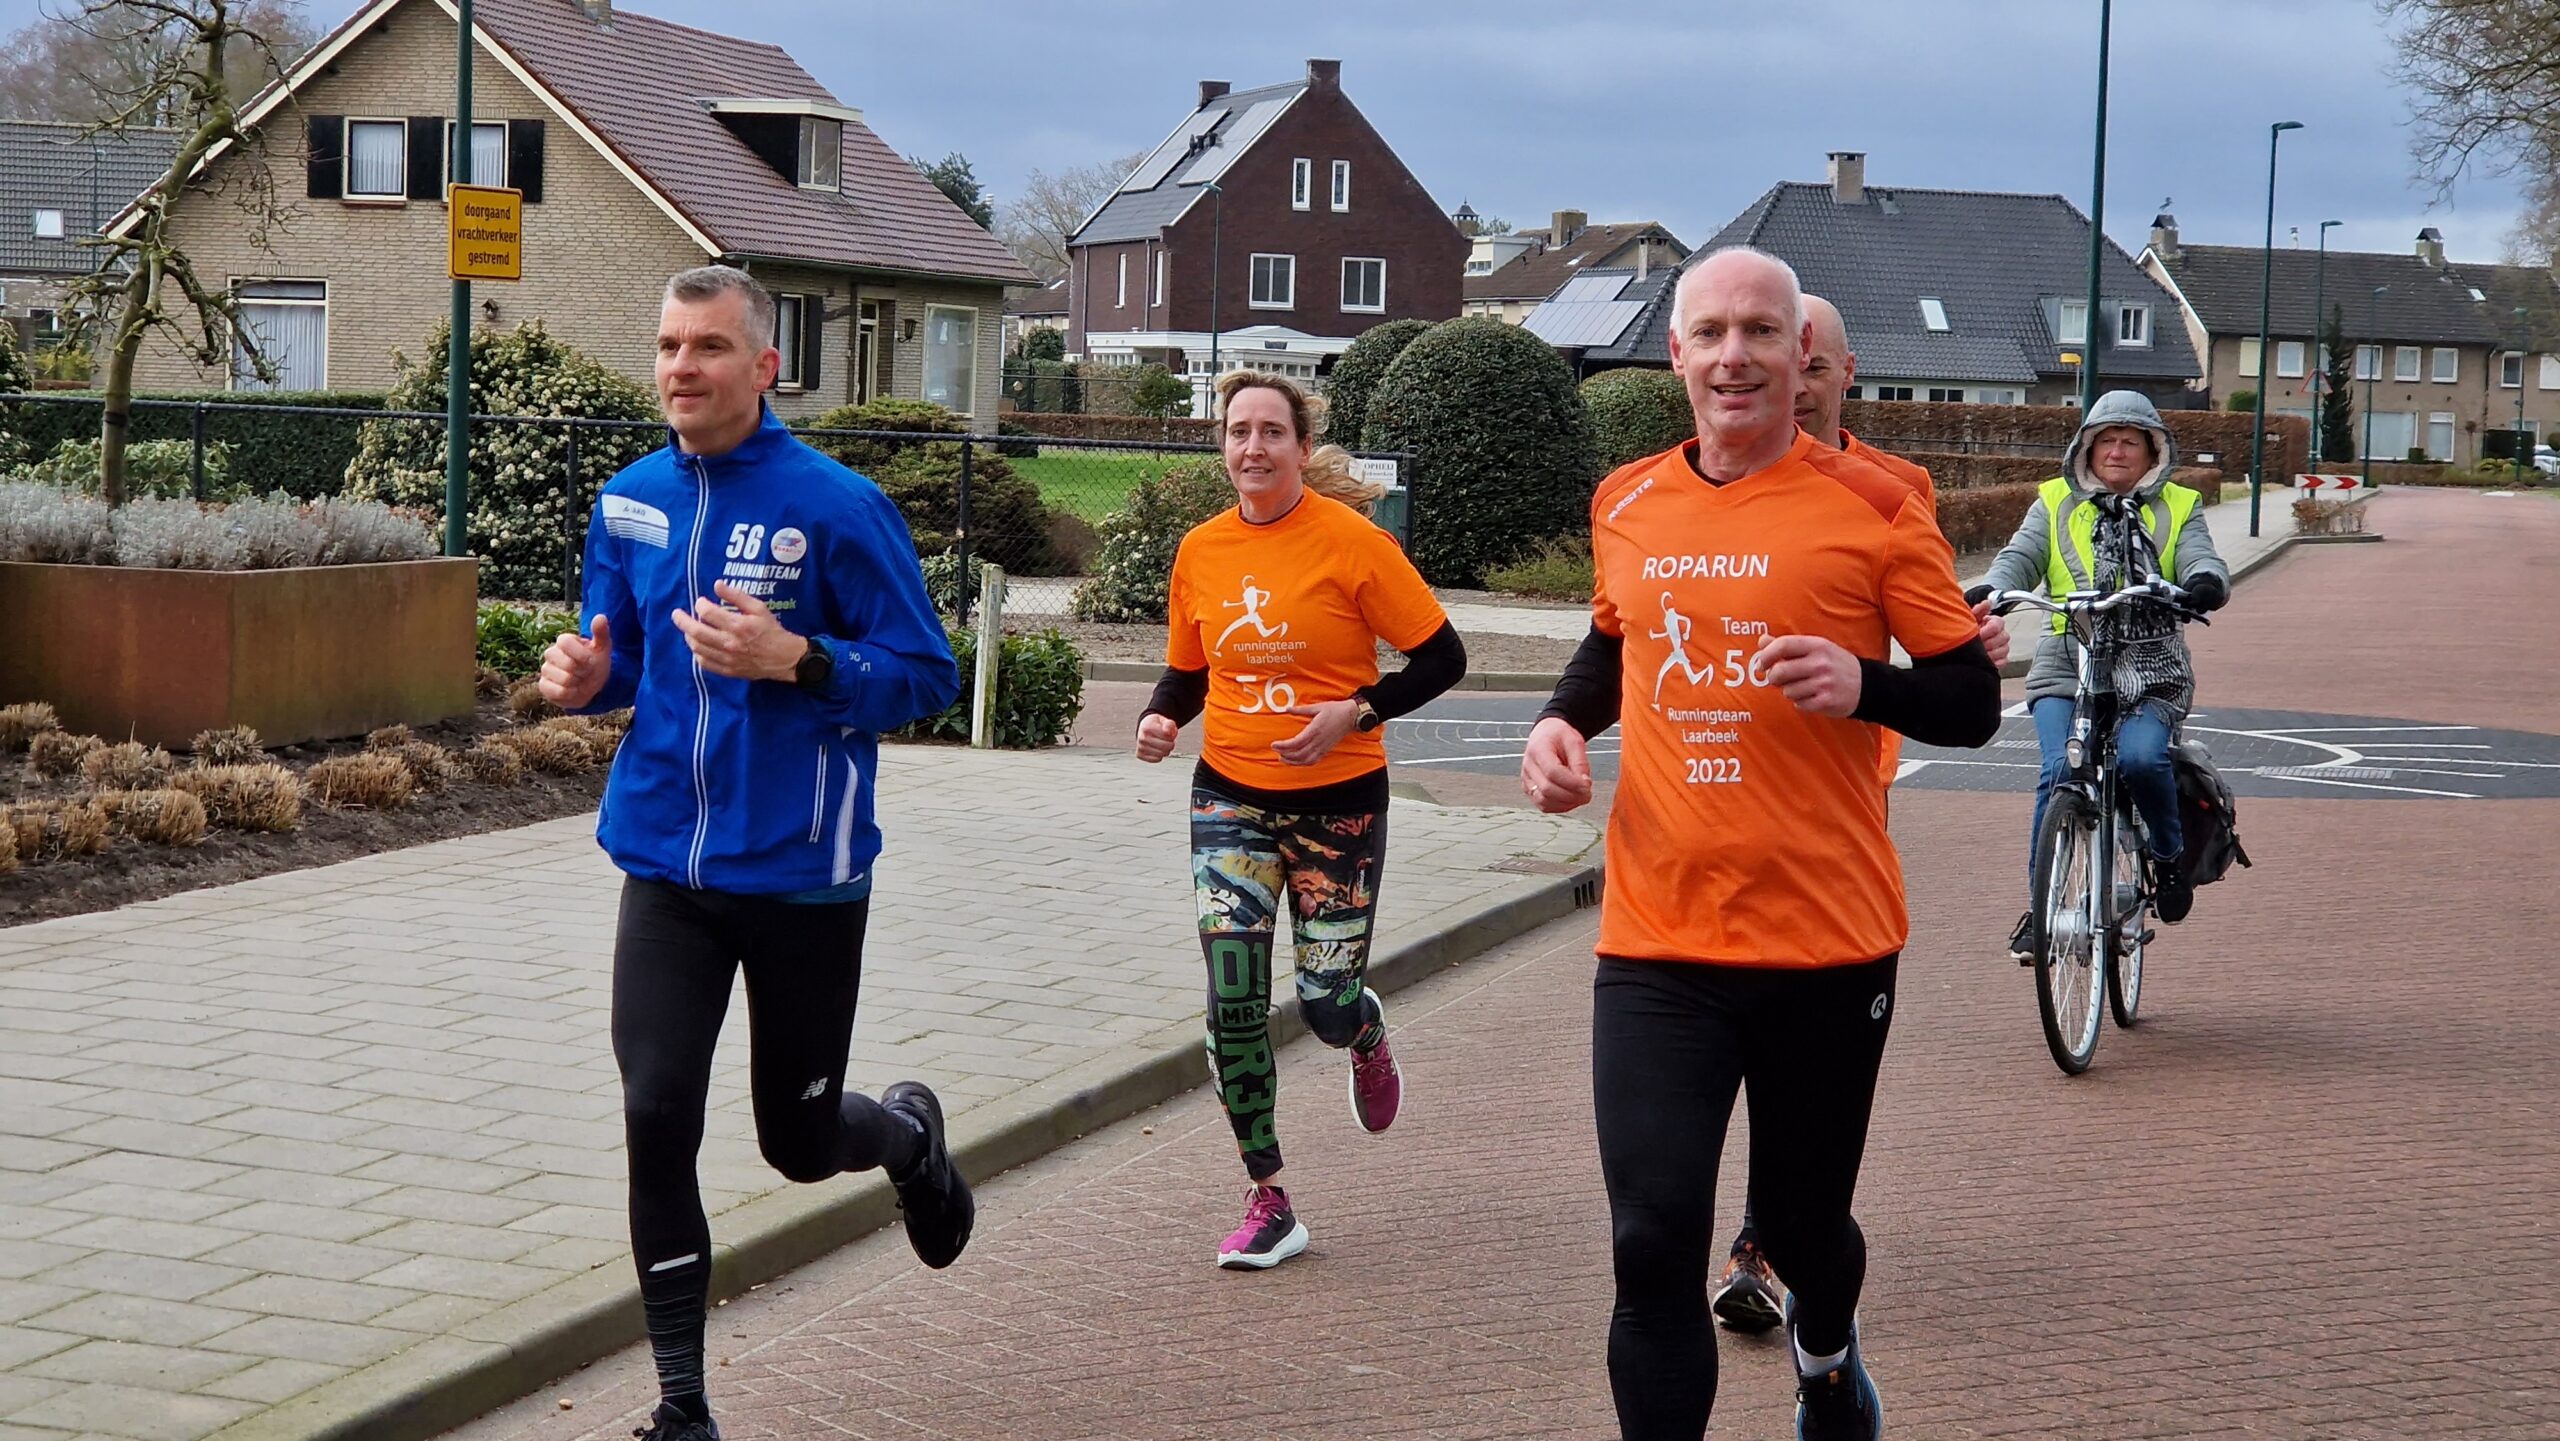 Eerste training van Running Team Laarbeek voor Roparun 2023